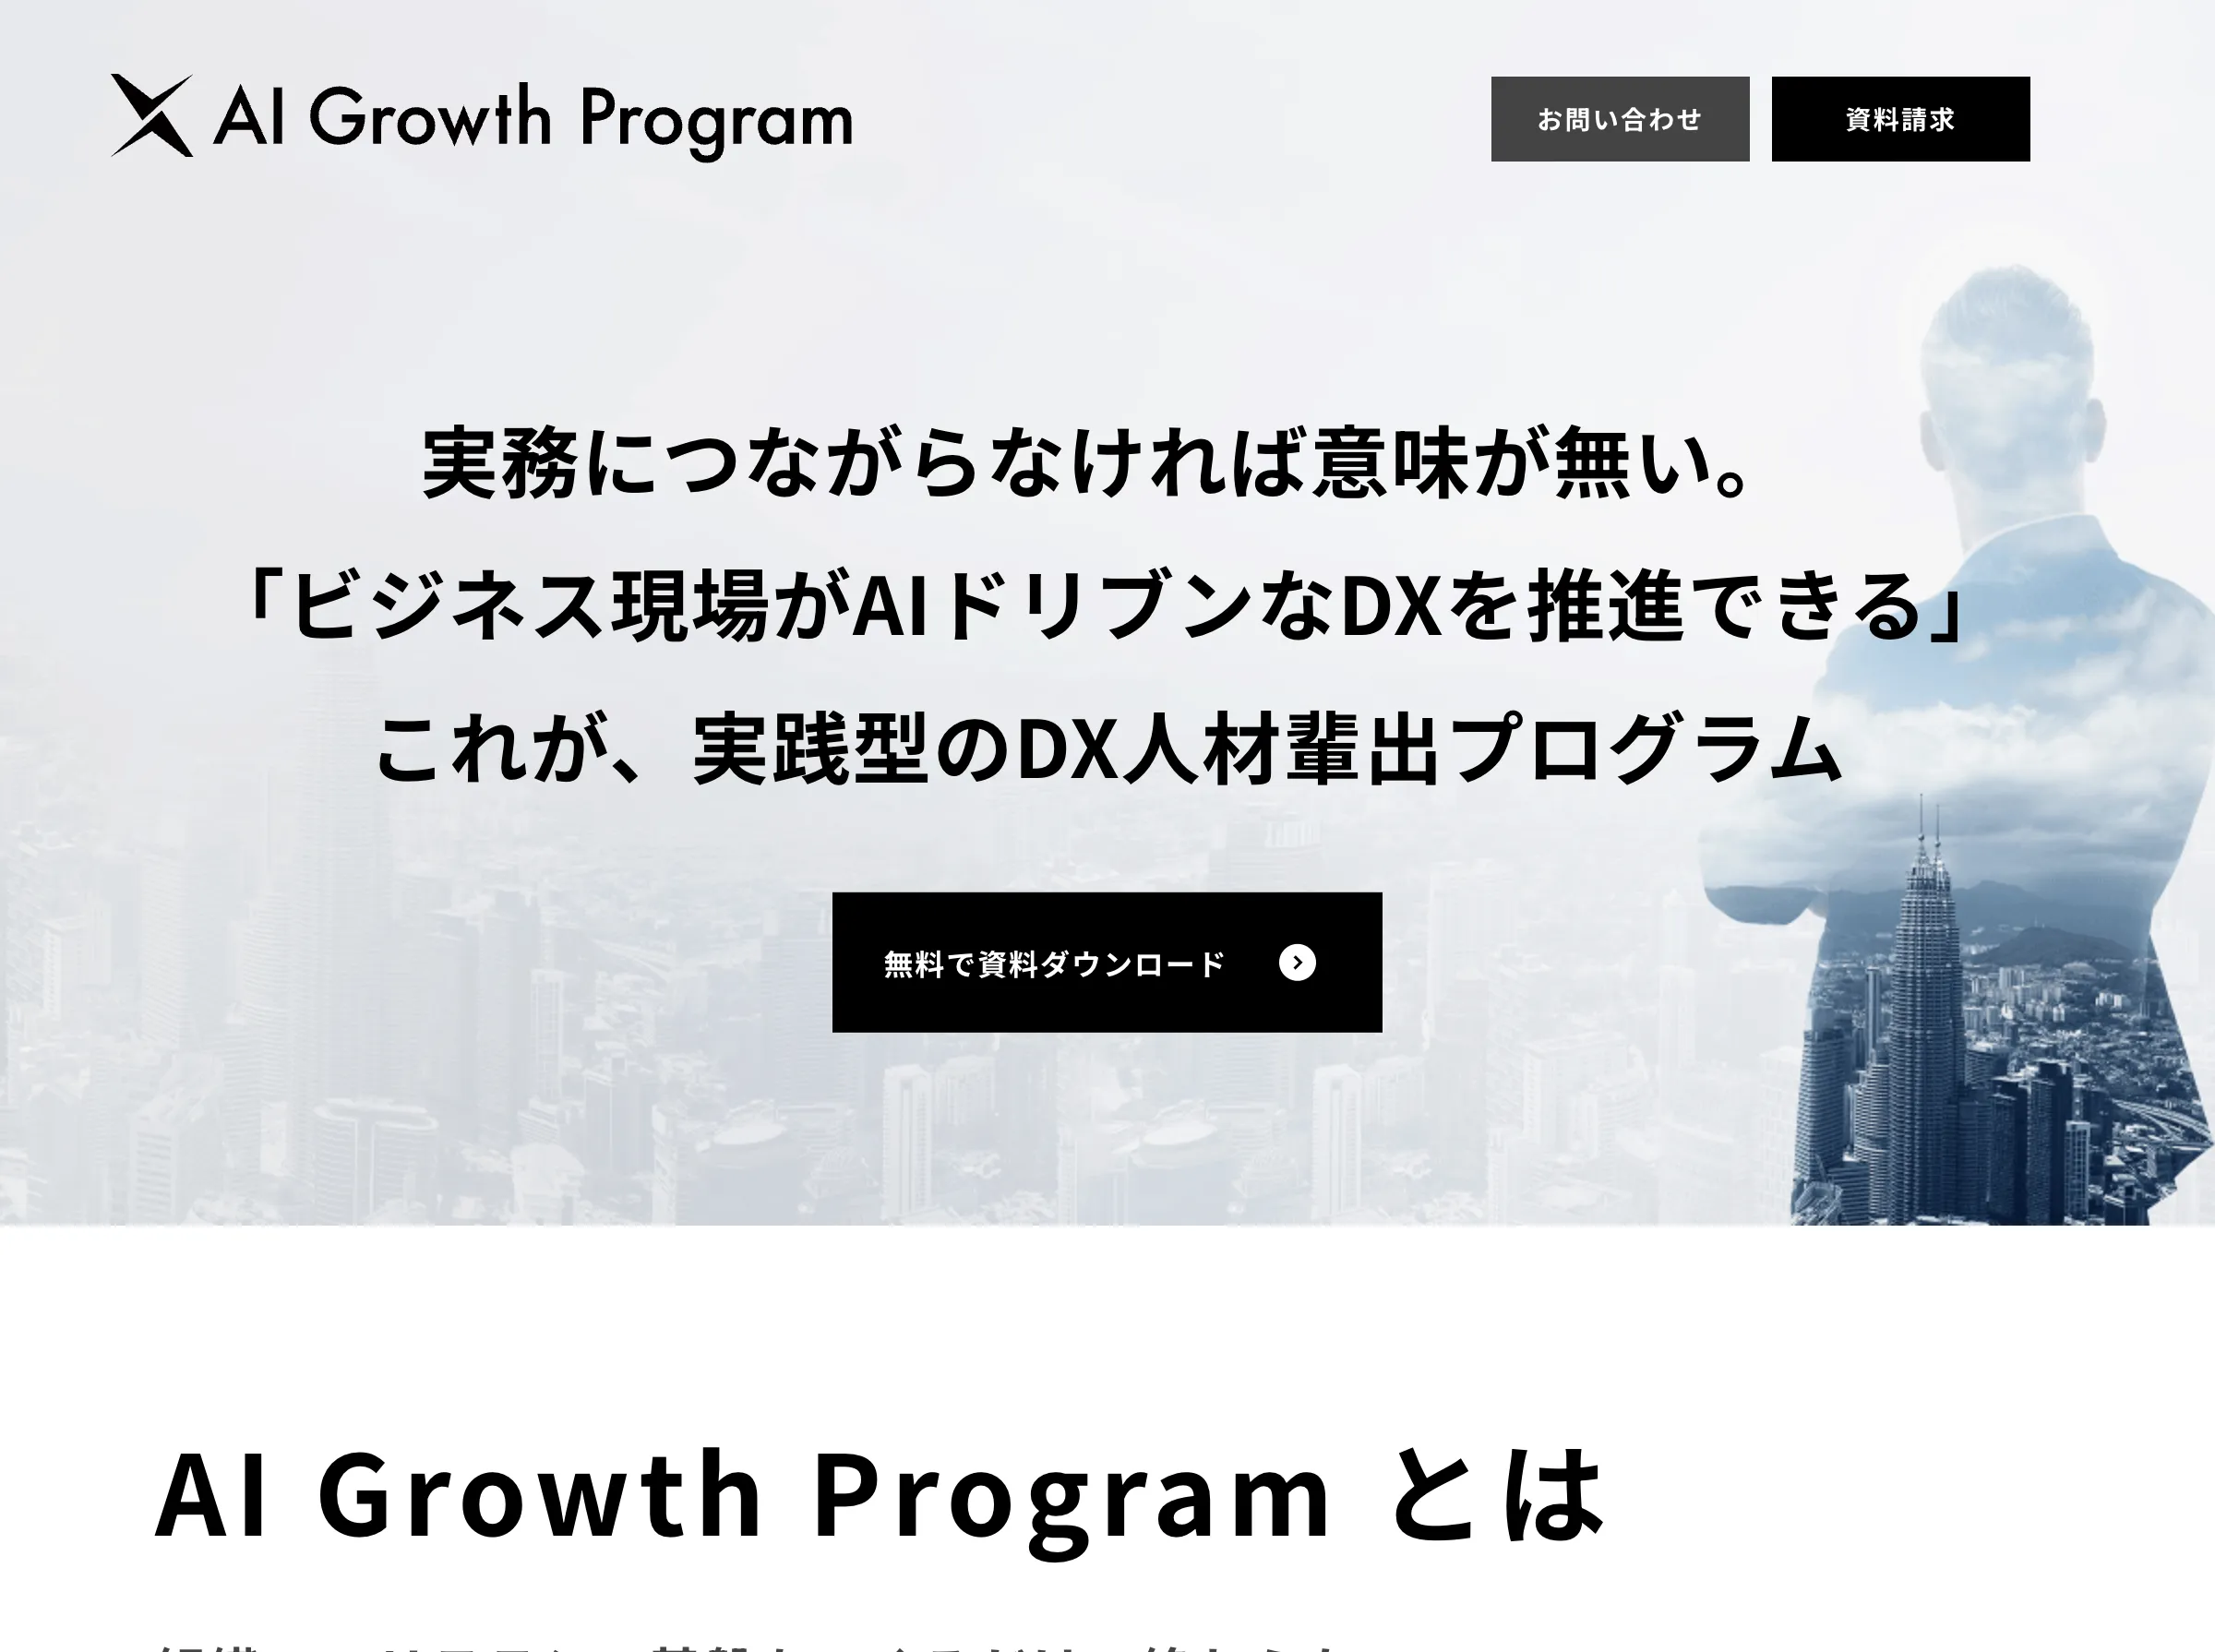 AI Growth Program(AI inside 株式会社)